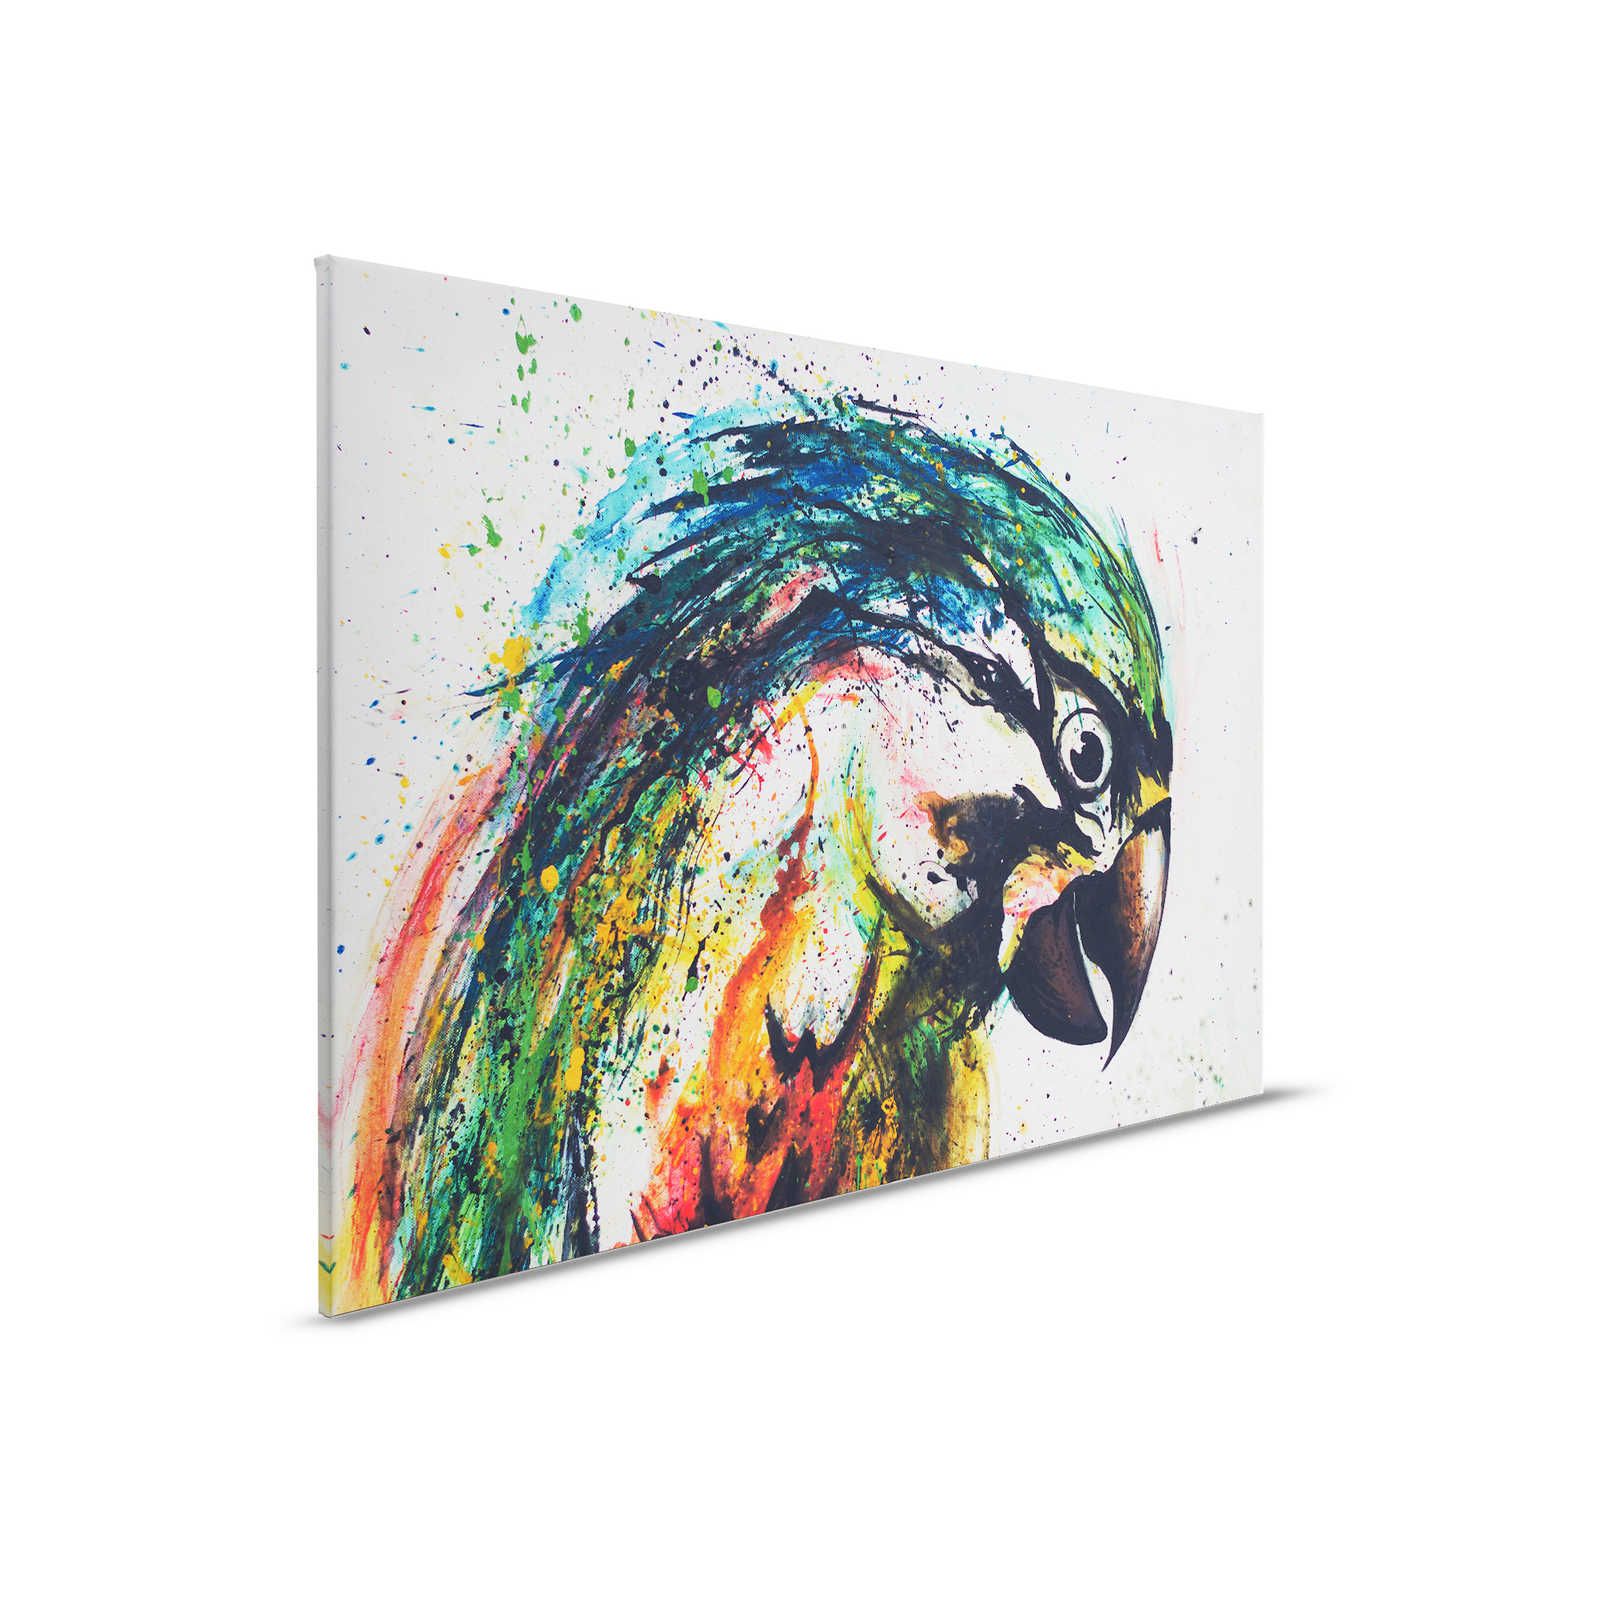 Leinwandbild Papagei im bunten Zeichenstil – 0,90 m x 0,60 m
